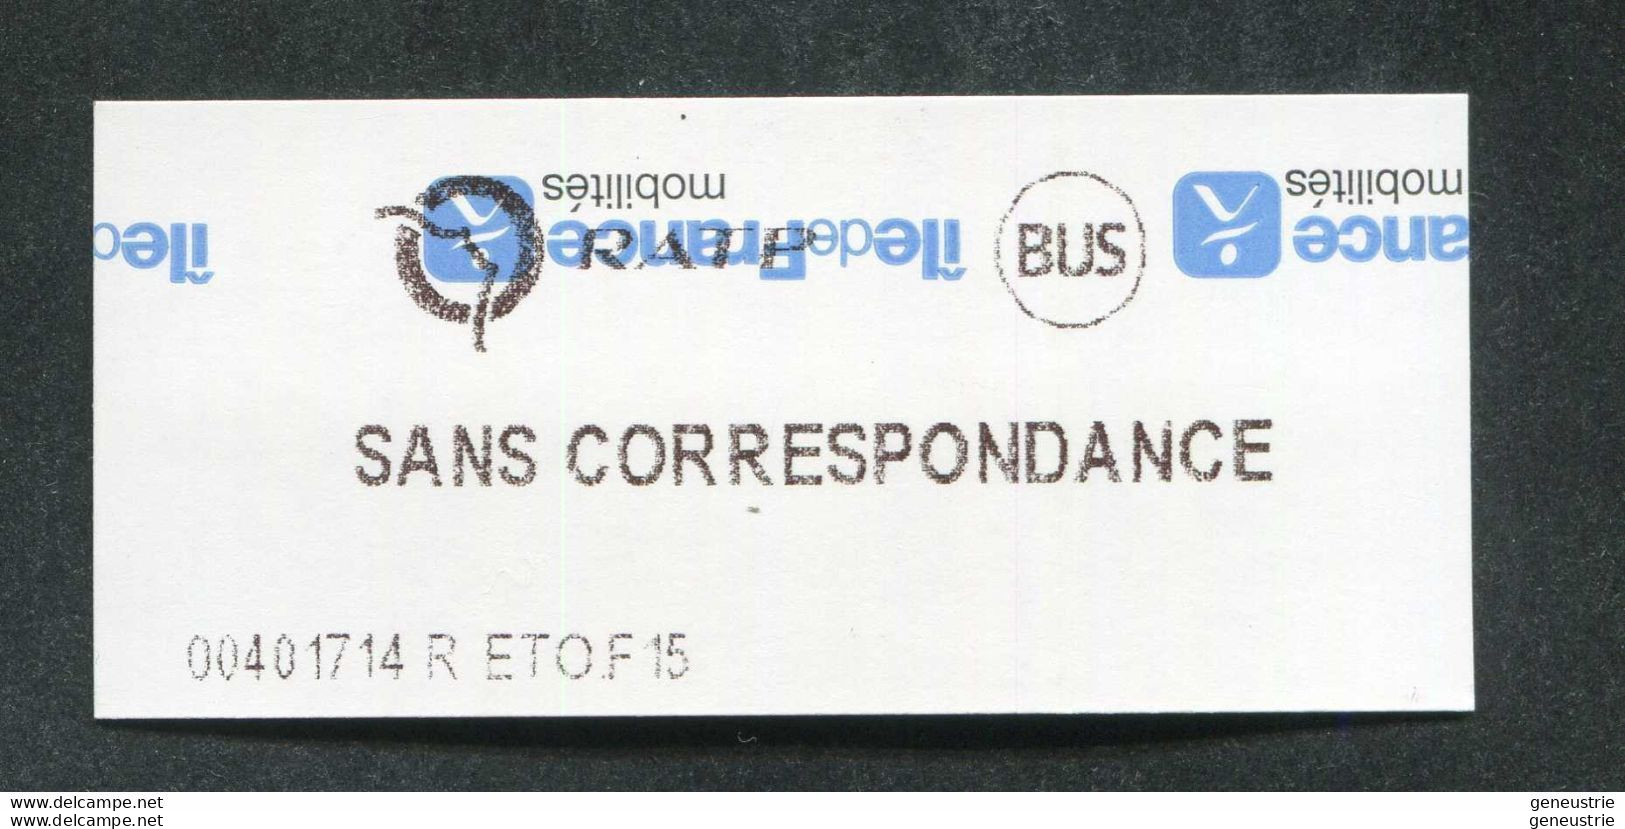 Impression Inversée ! Ticket De Métro Et Bus De Paris Neuf "Sans Correspondance" (Station Etoile) RATP - Europa